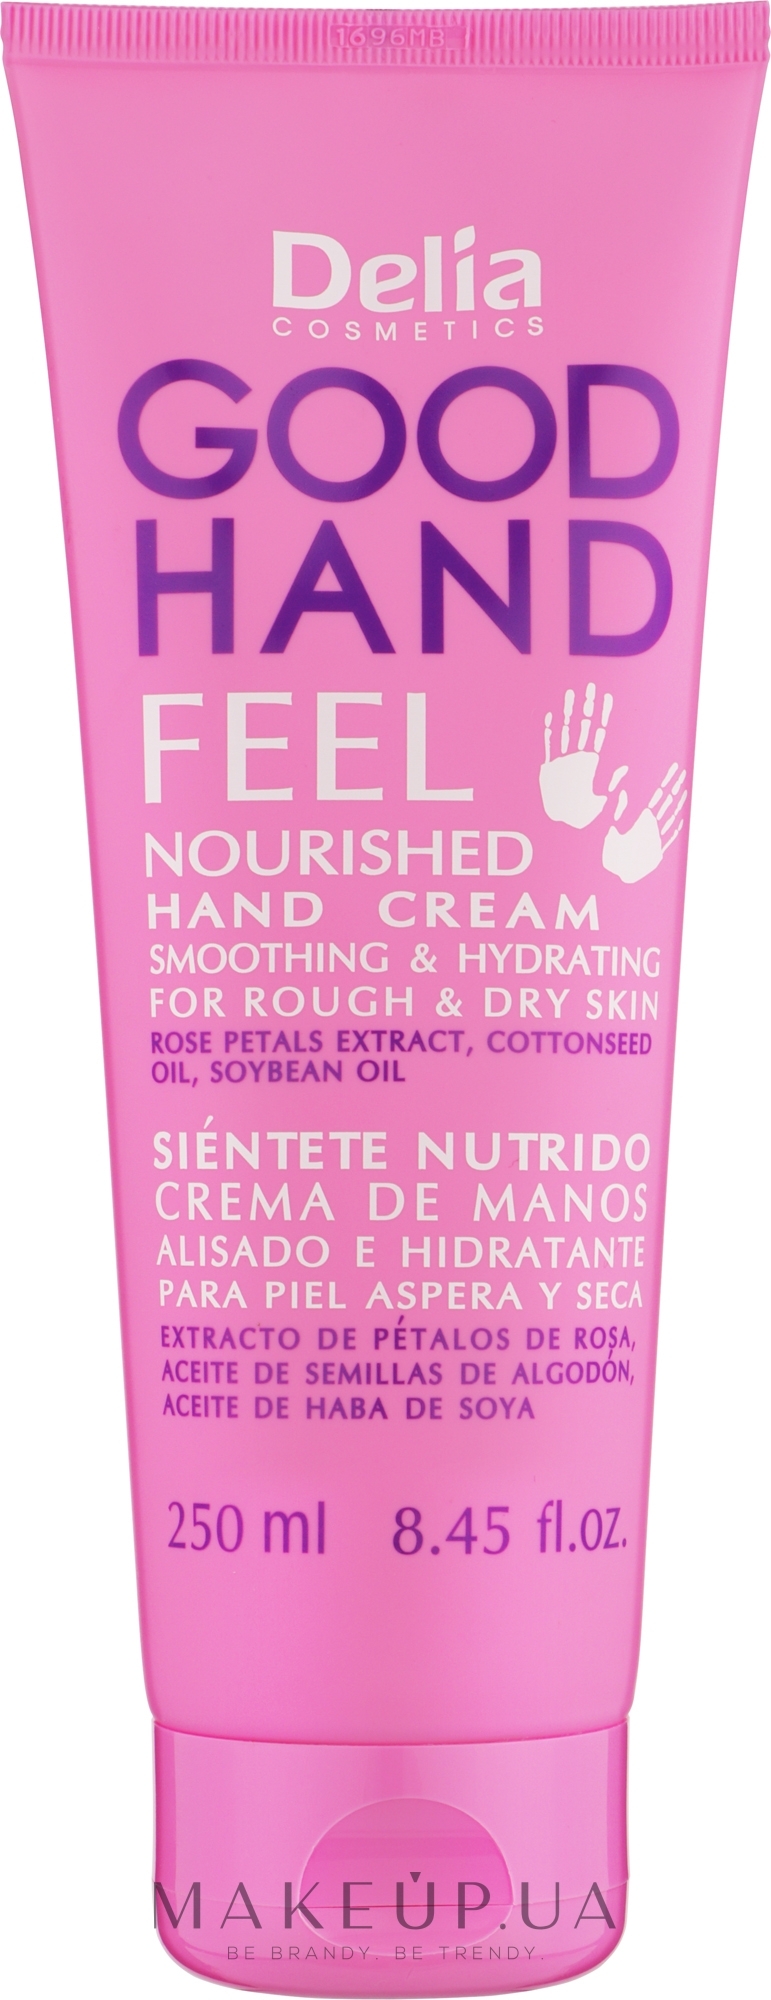 Крем для рук "Питательный" - Delia Cosmetics Good Hand Feel Nourished Hand Cream  — фото 250ml